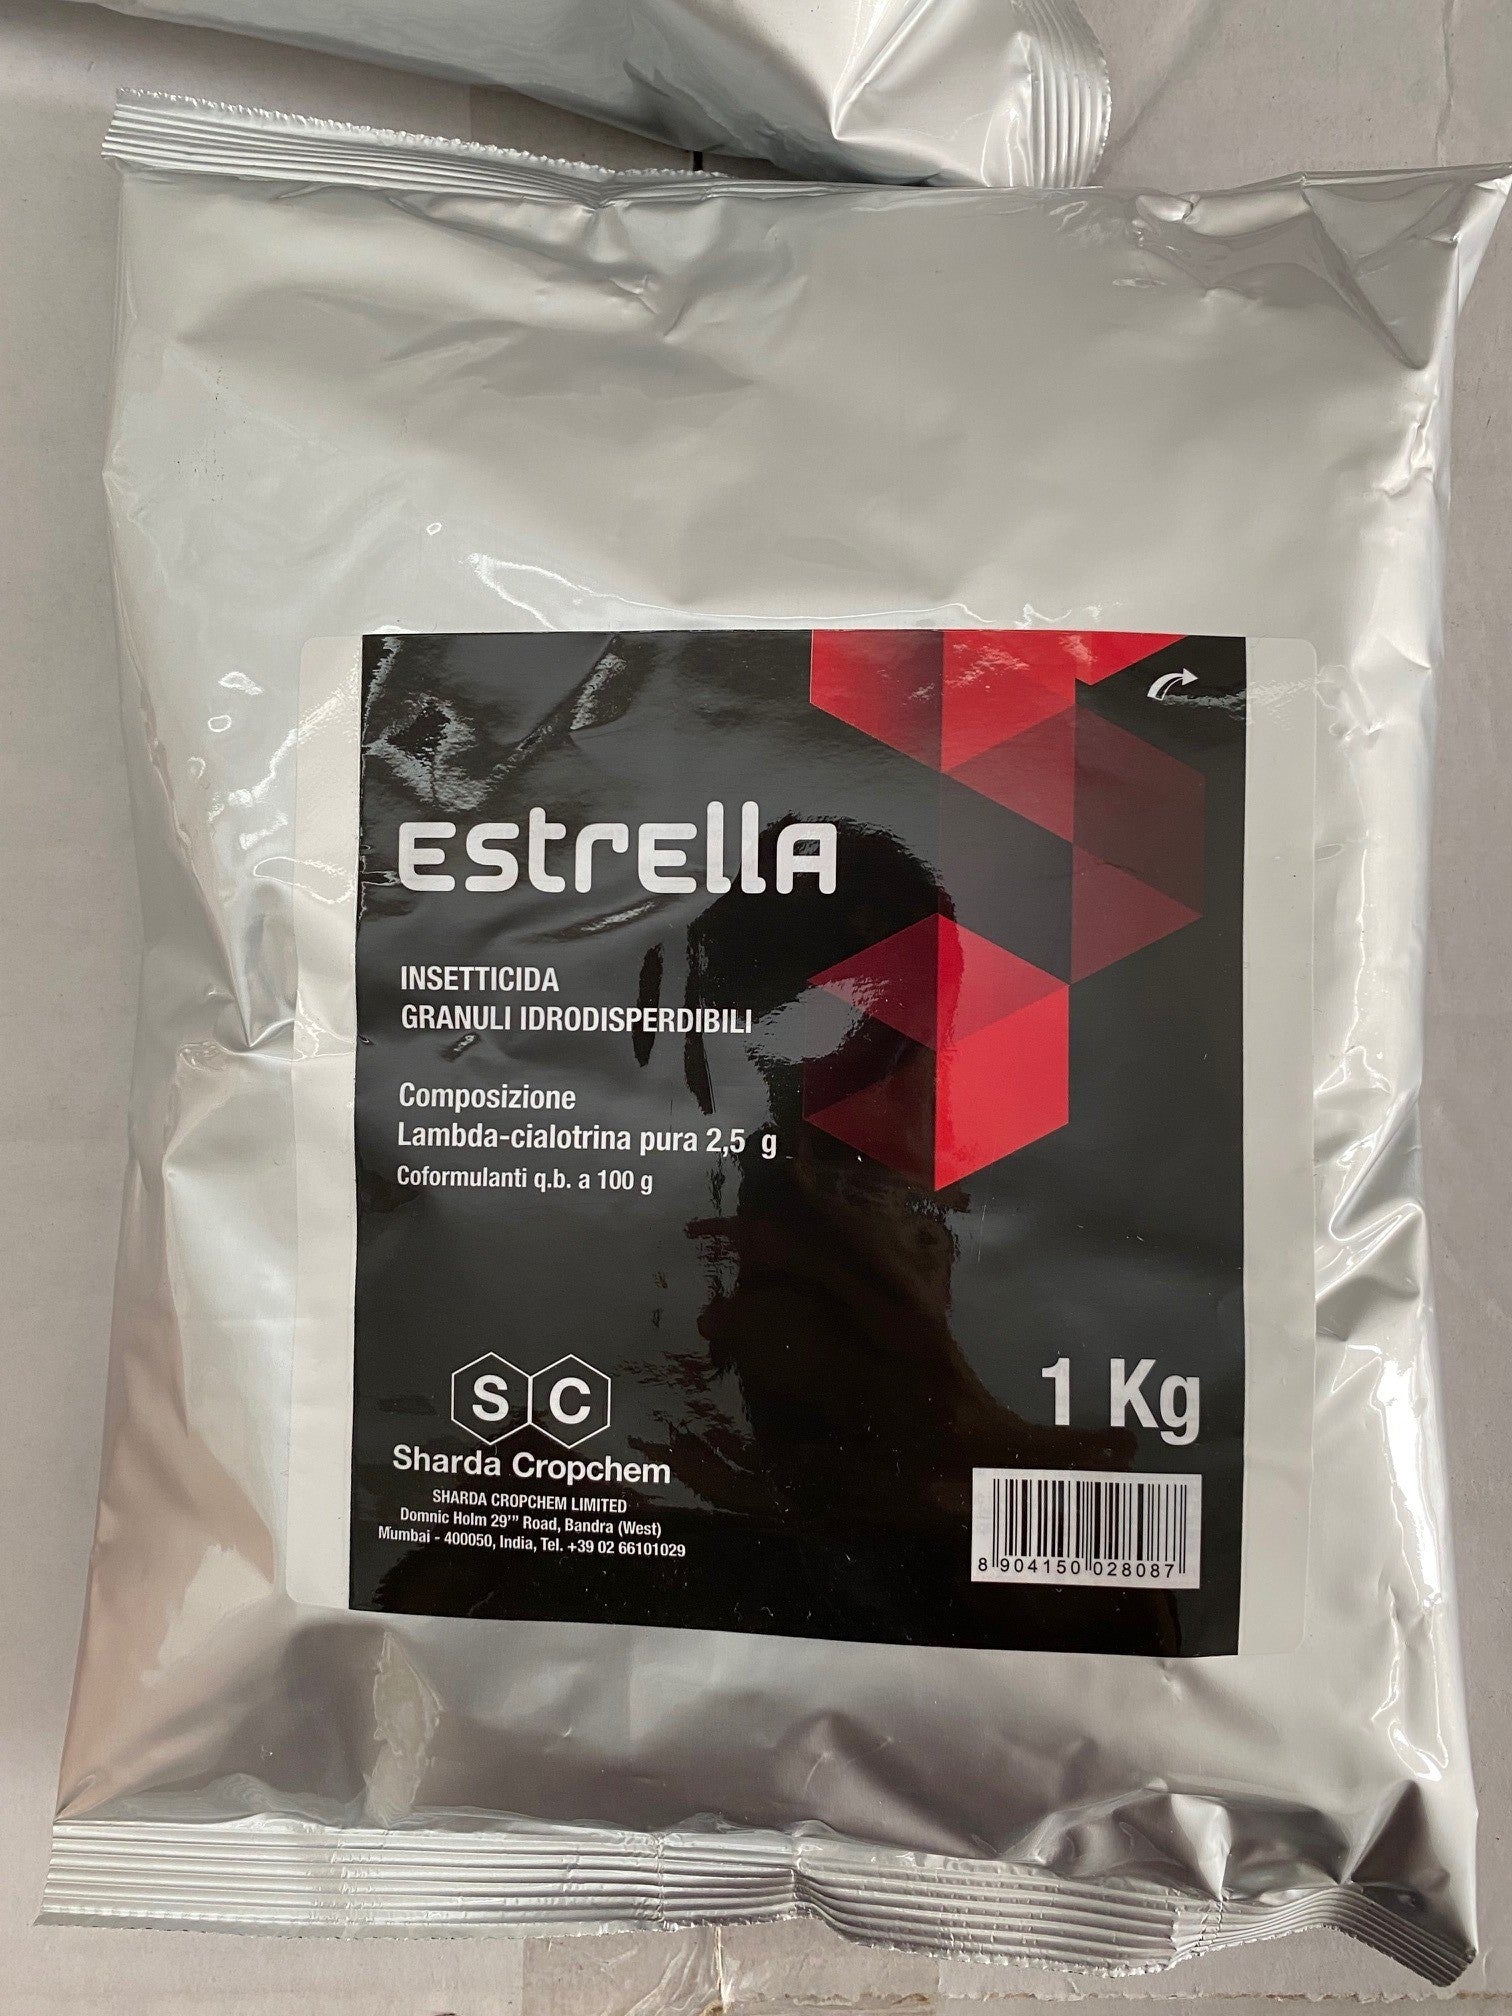 Estrella x 1 KG - Insetticida ad ampio spettro che agisce per contatto e ingestione con un forte effetto repellente e abbattente